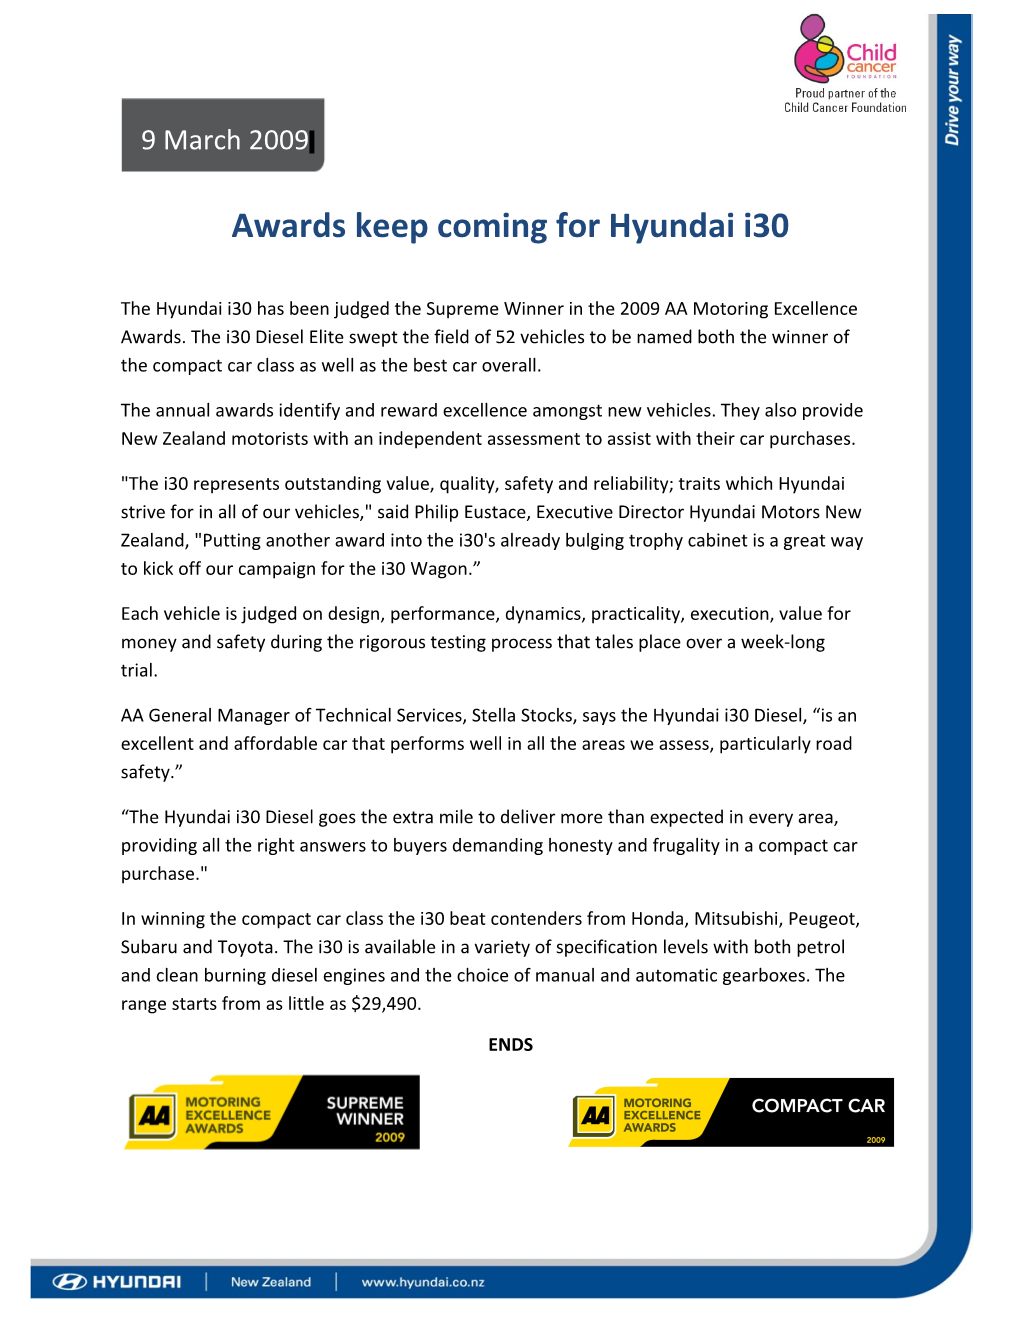 Awards Keep Coming for Hyundai I30